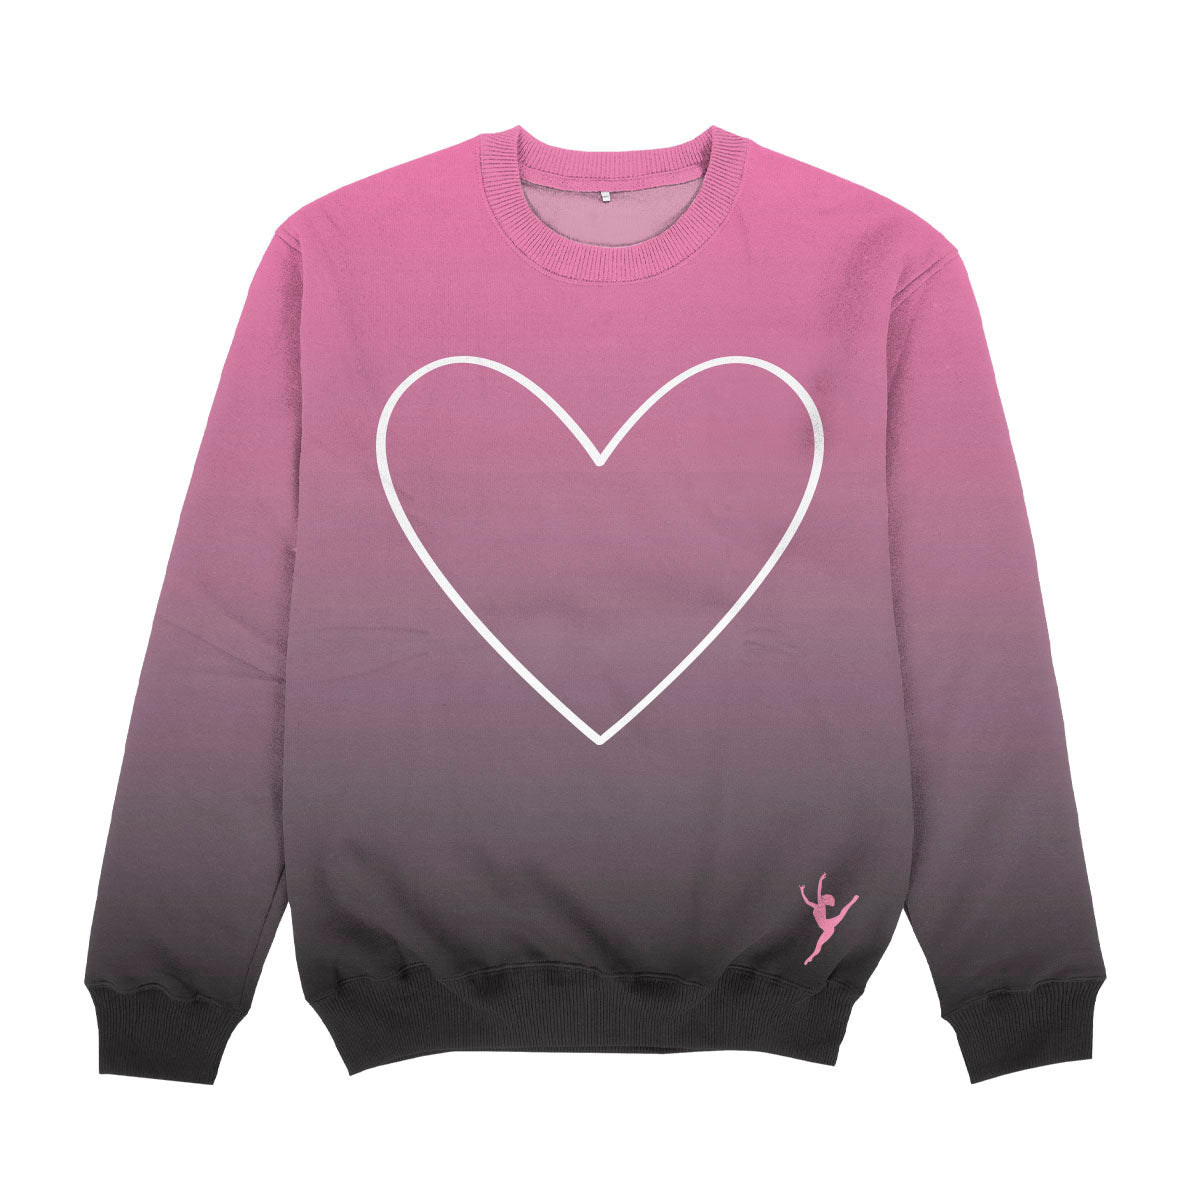 Heart Of Ballet Dancer Pink and Gray Degrade Crewneck Sweatshirt